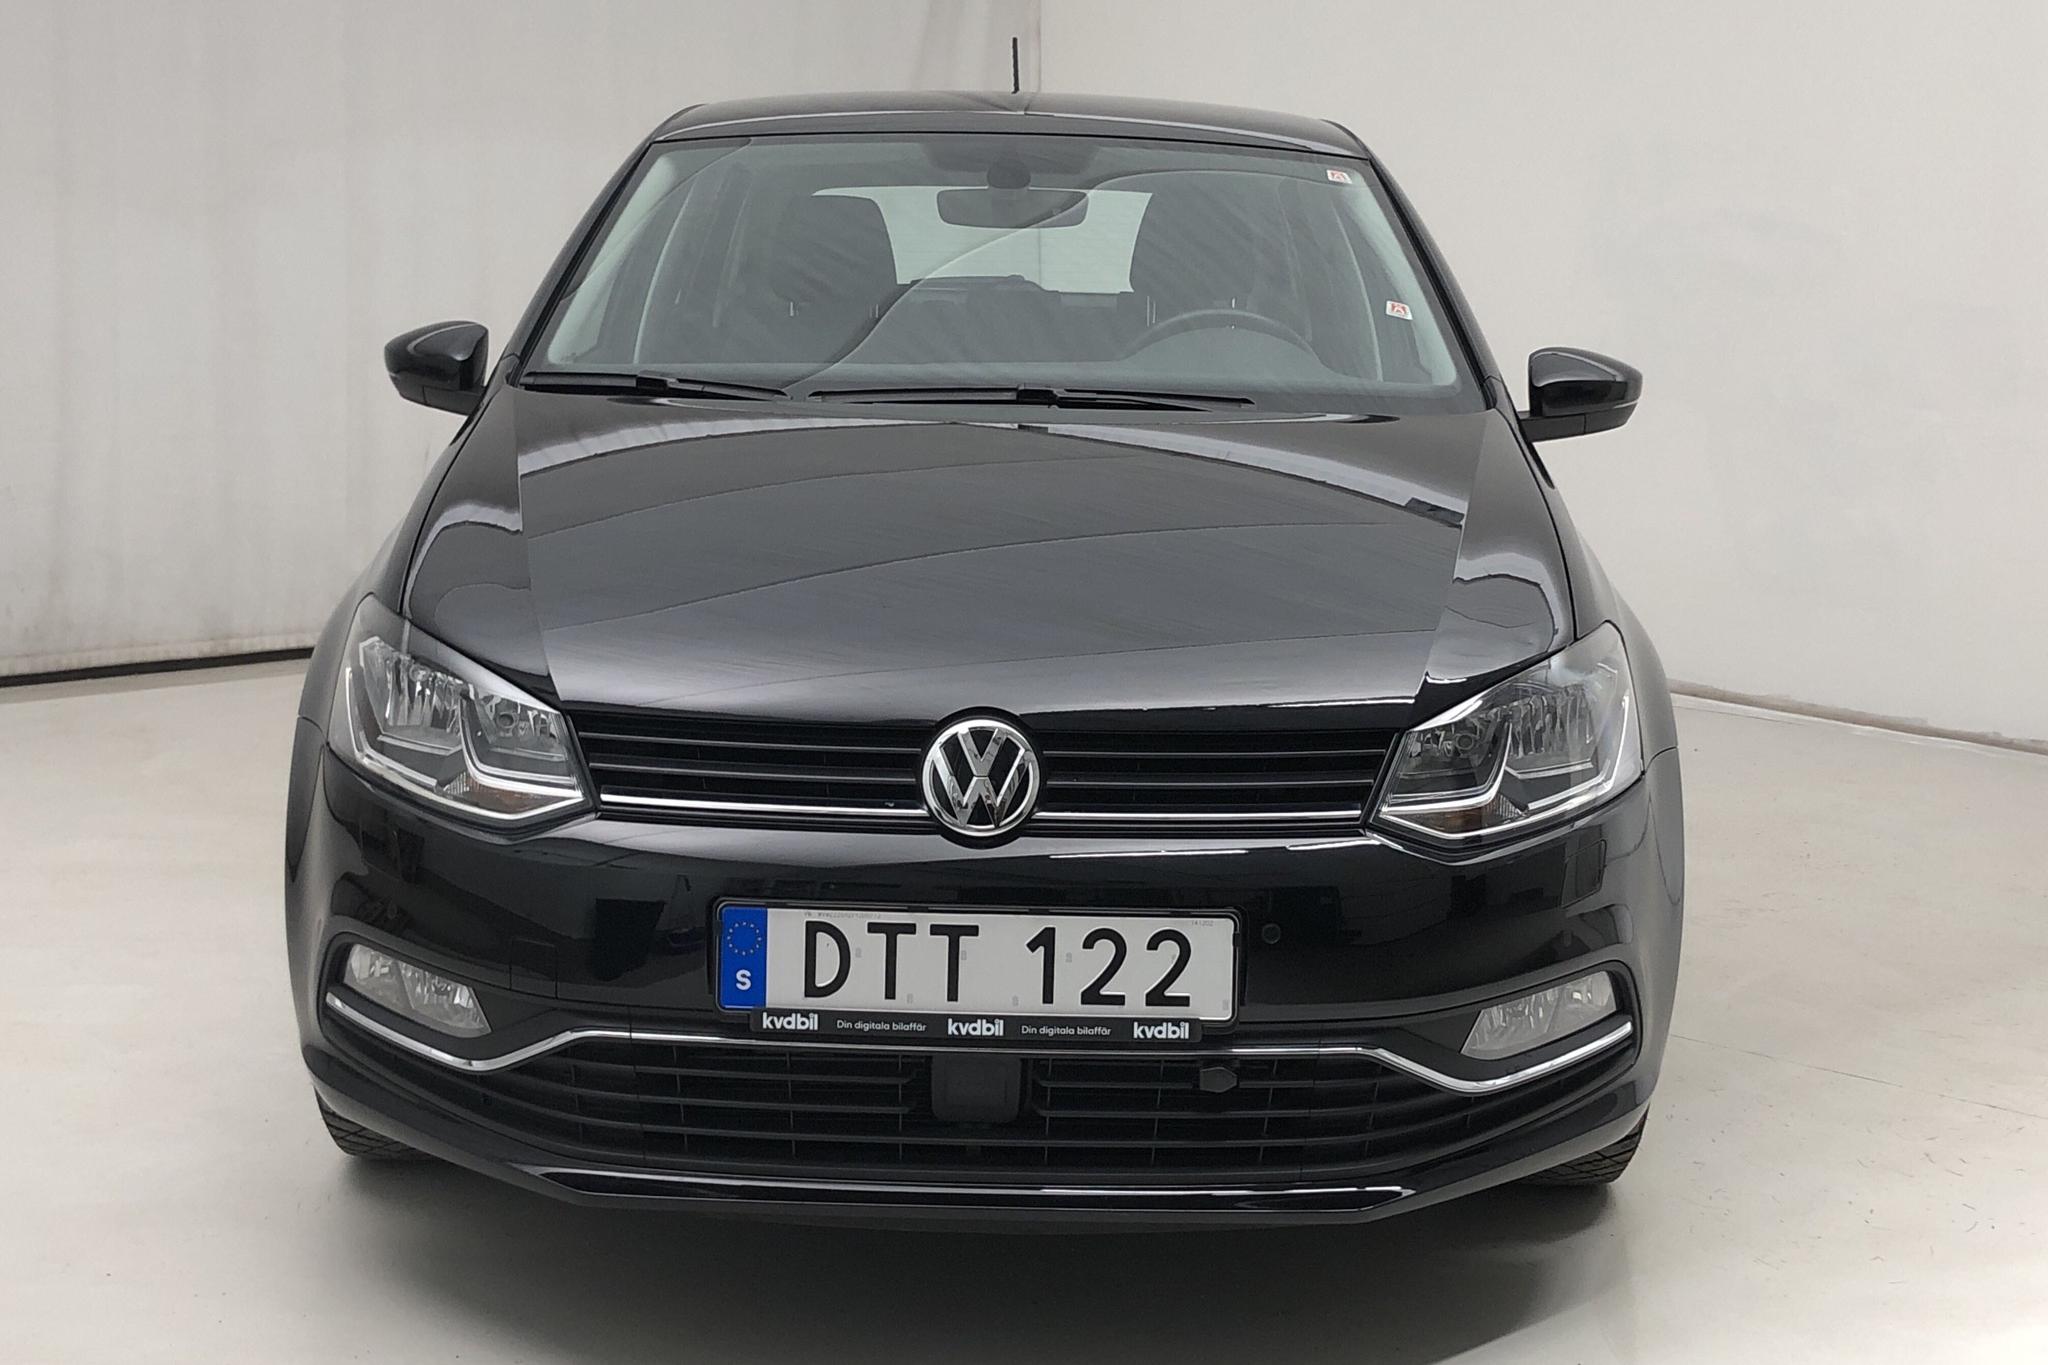 VW Polo 1.2 TSI 5dr (90hk) - 8 870 km - Automatic - black - 2015